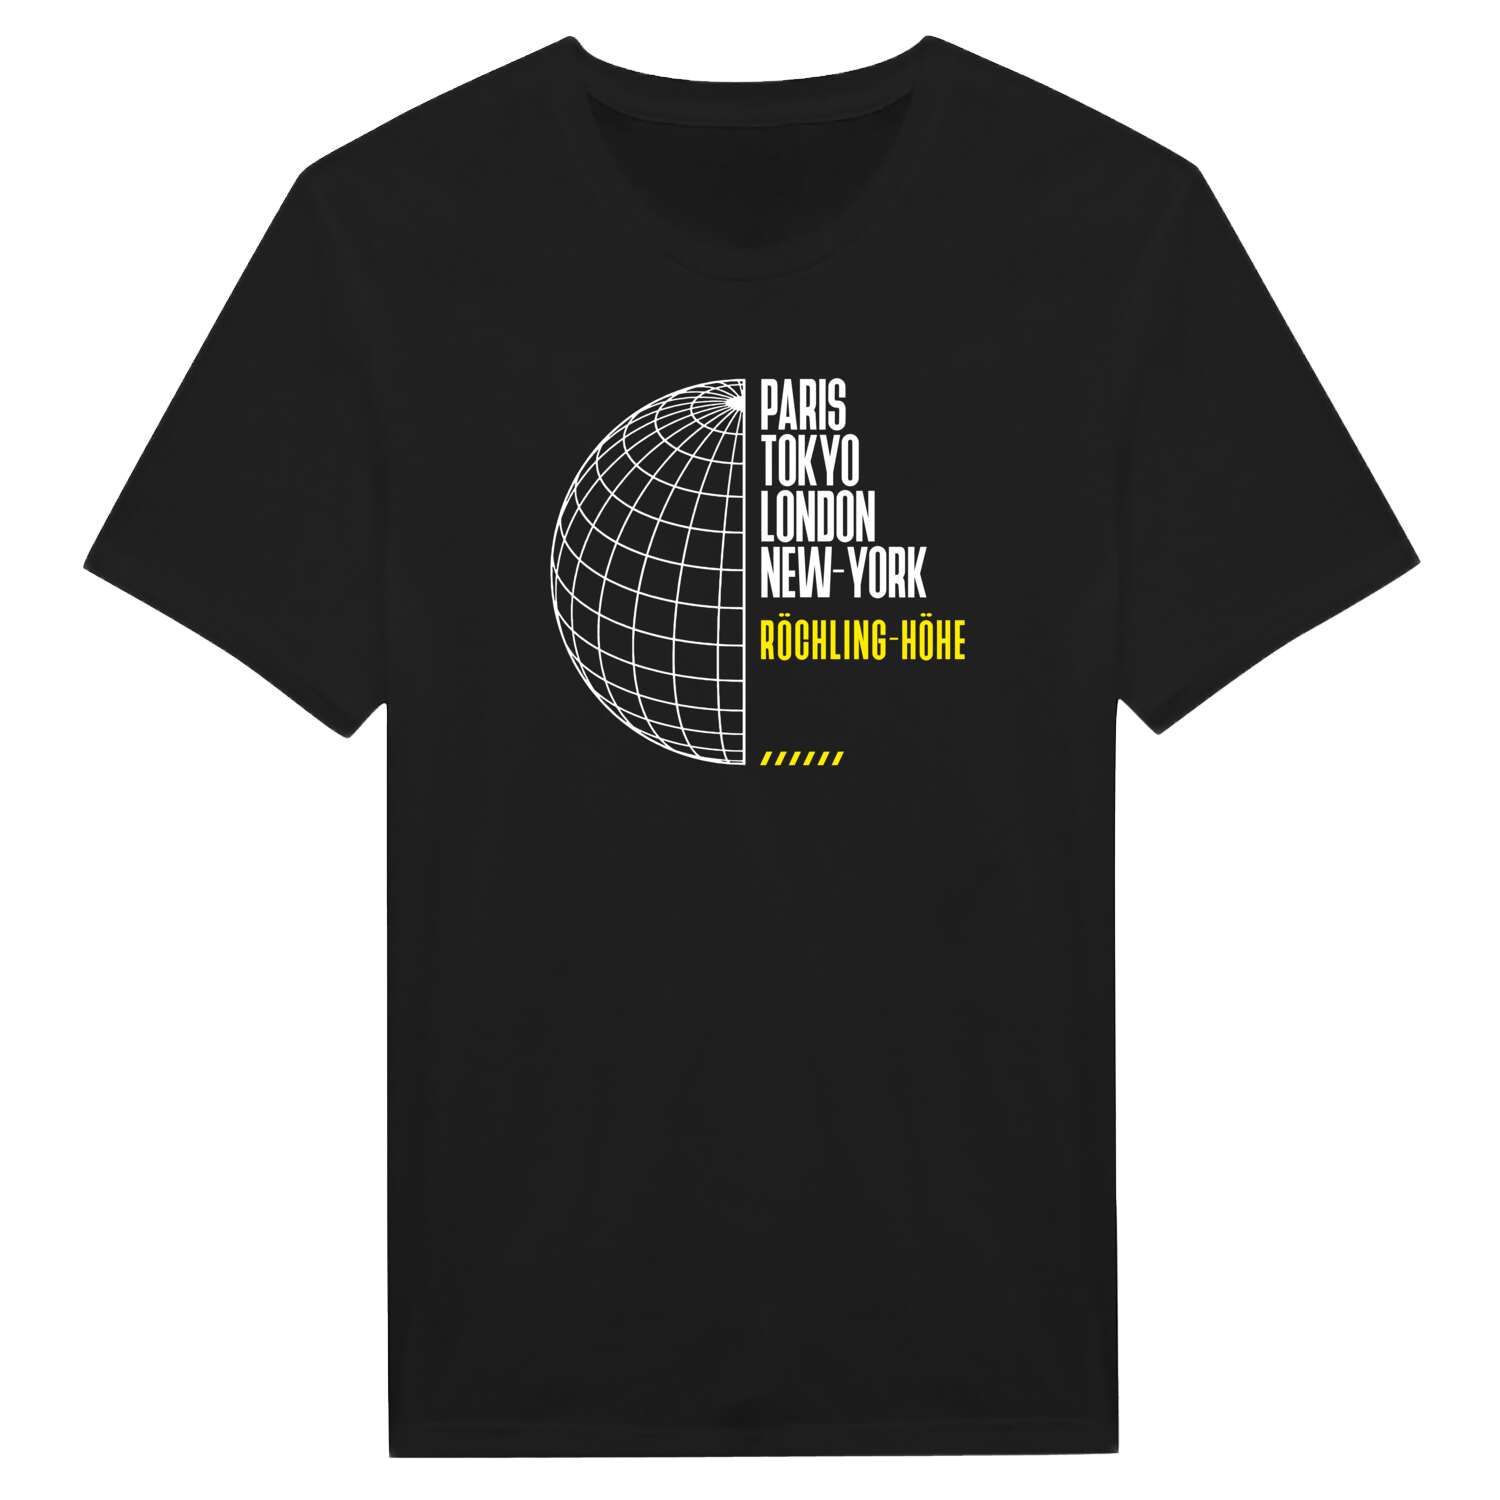 Röchling-Höhe T-Shirt »Paris Tokyo London«